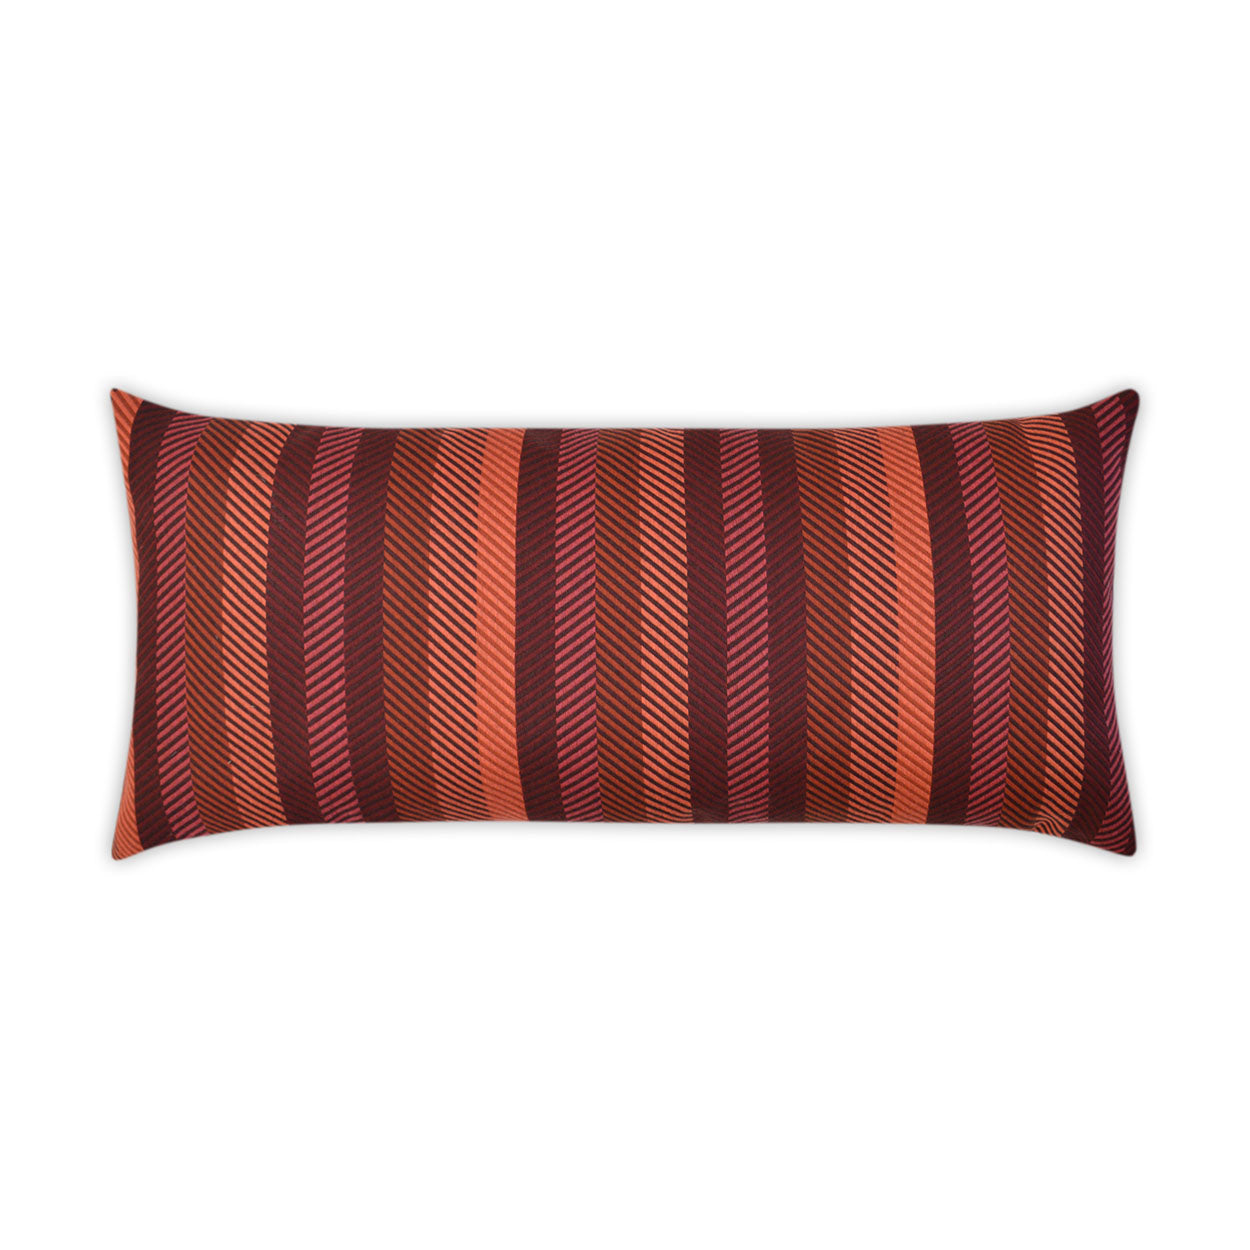 Outdoor Lattitude Lumbar Pillow - Merlot